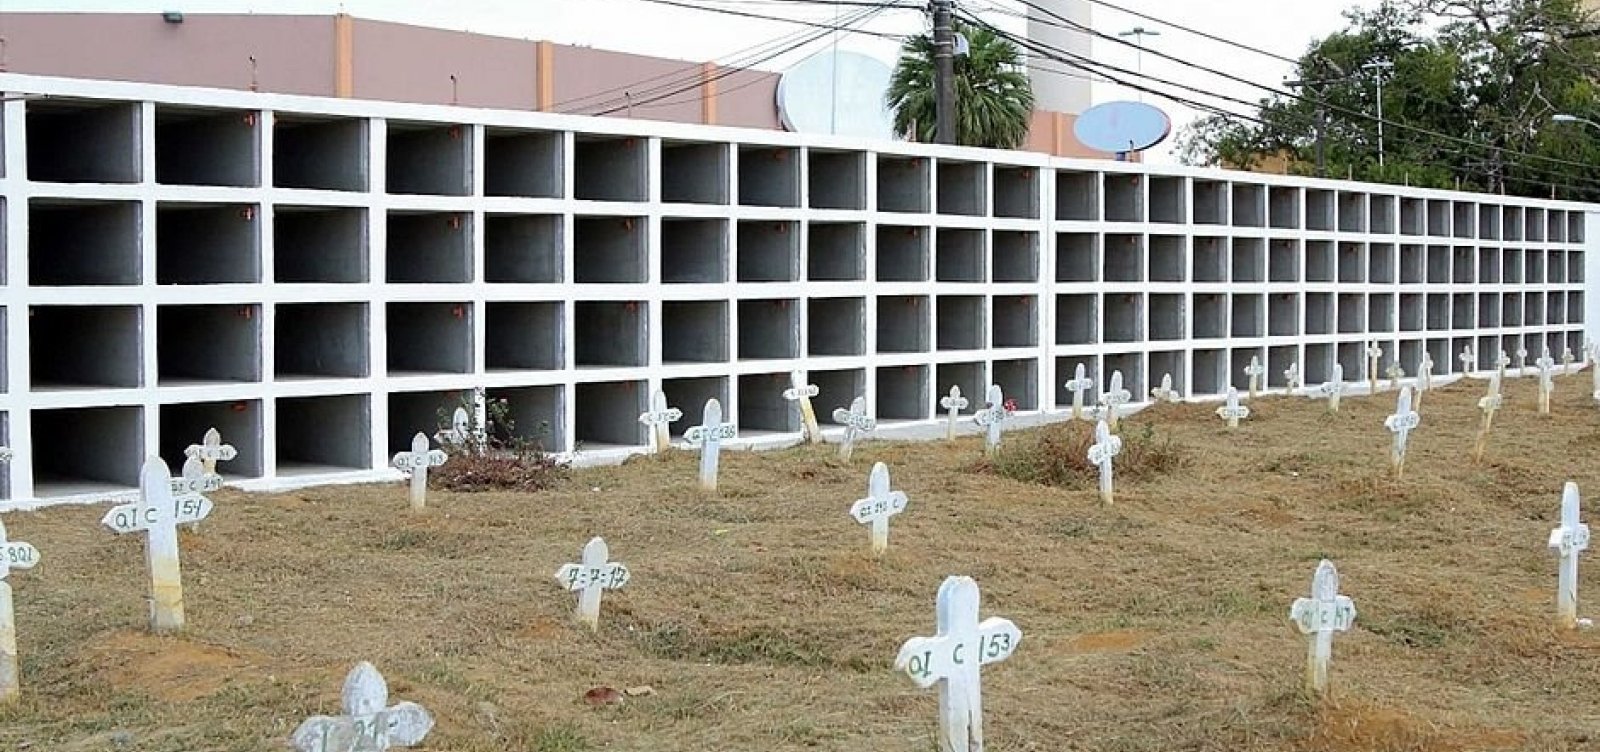 Coronavírus: Salvador registra em junho mais de 10 sepultamentos diários em cemitérios municipais